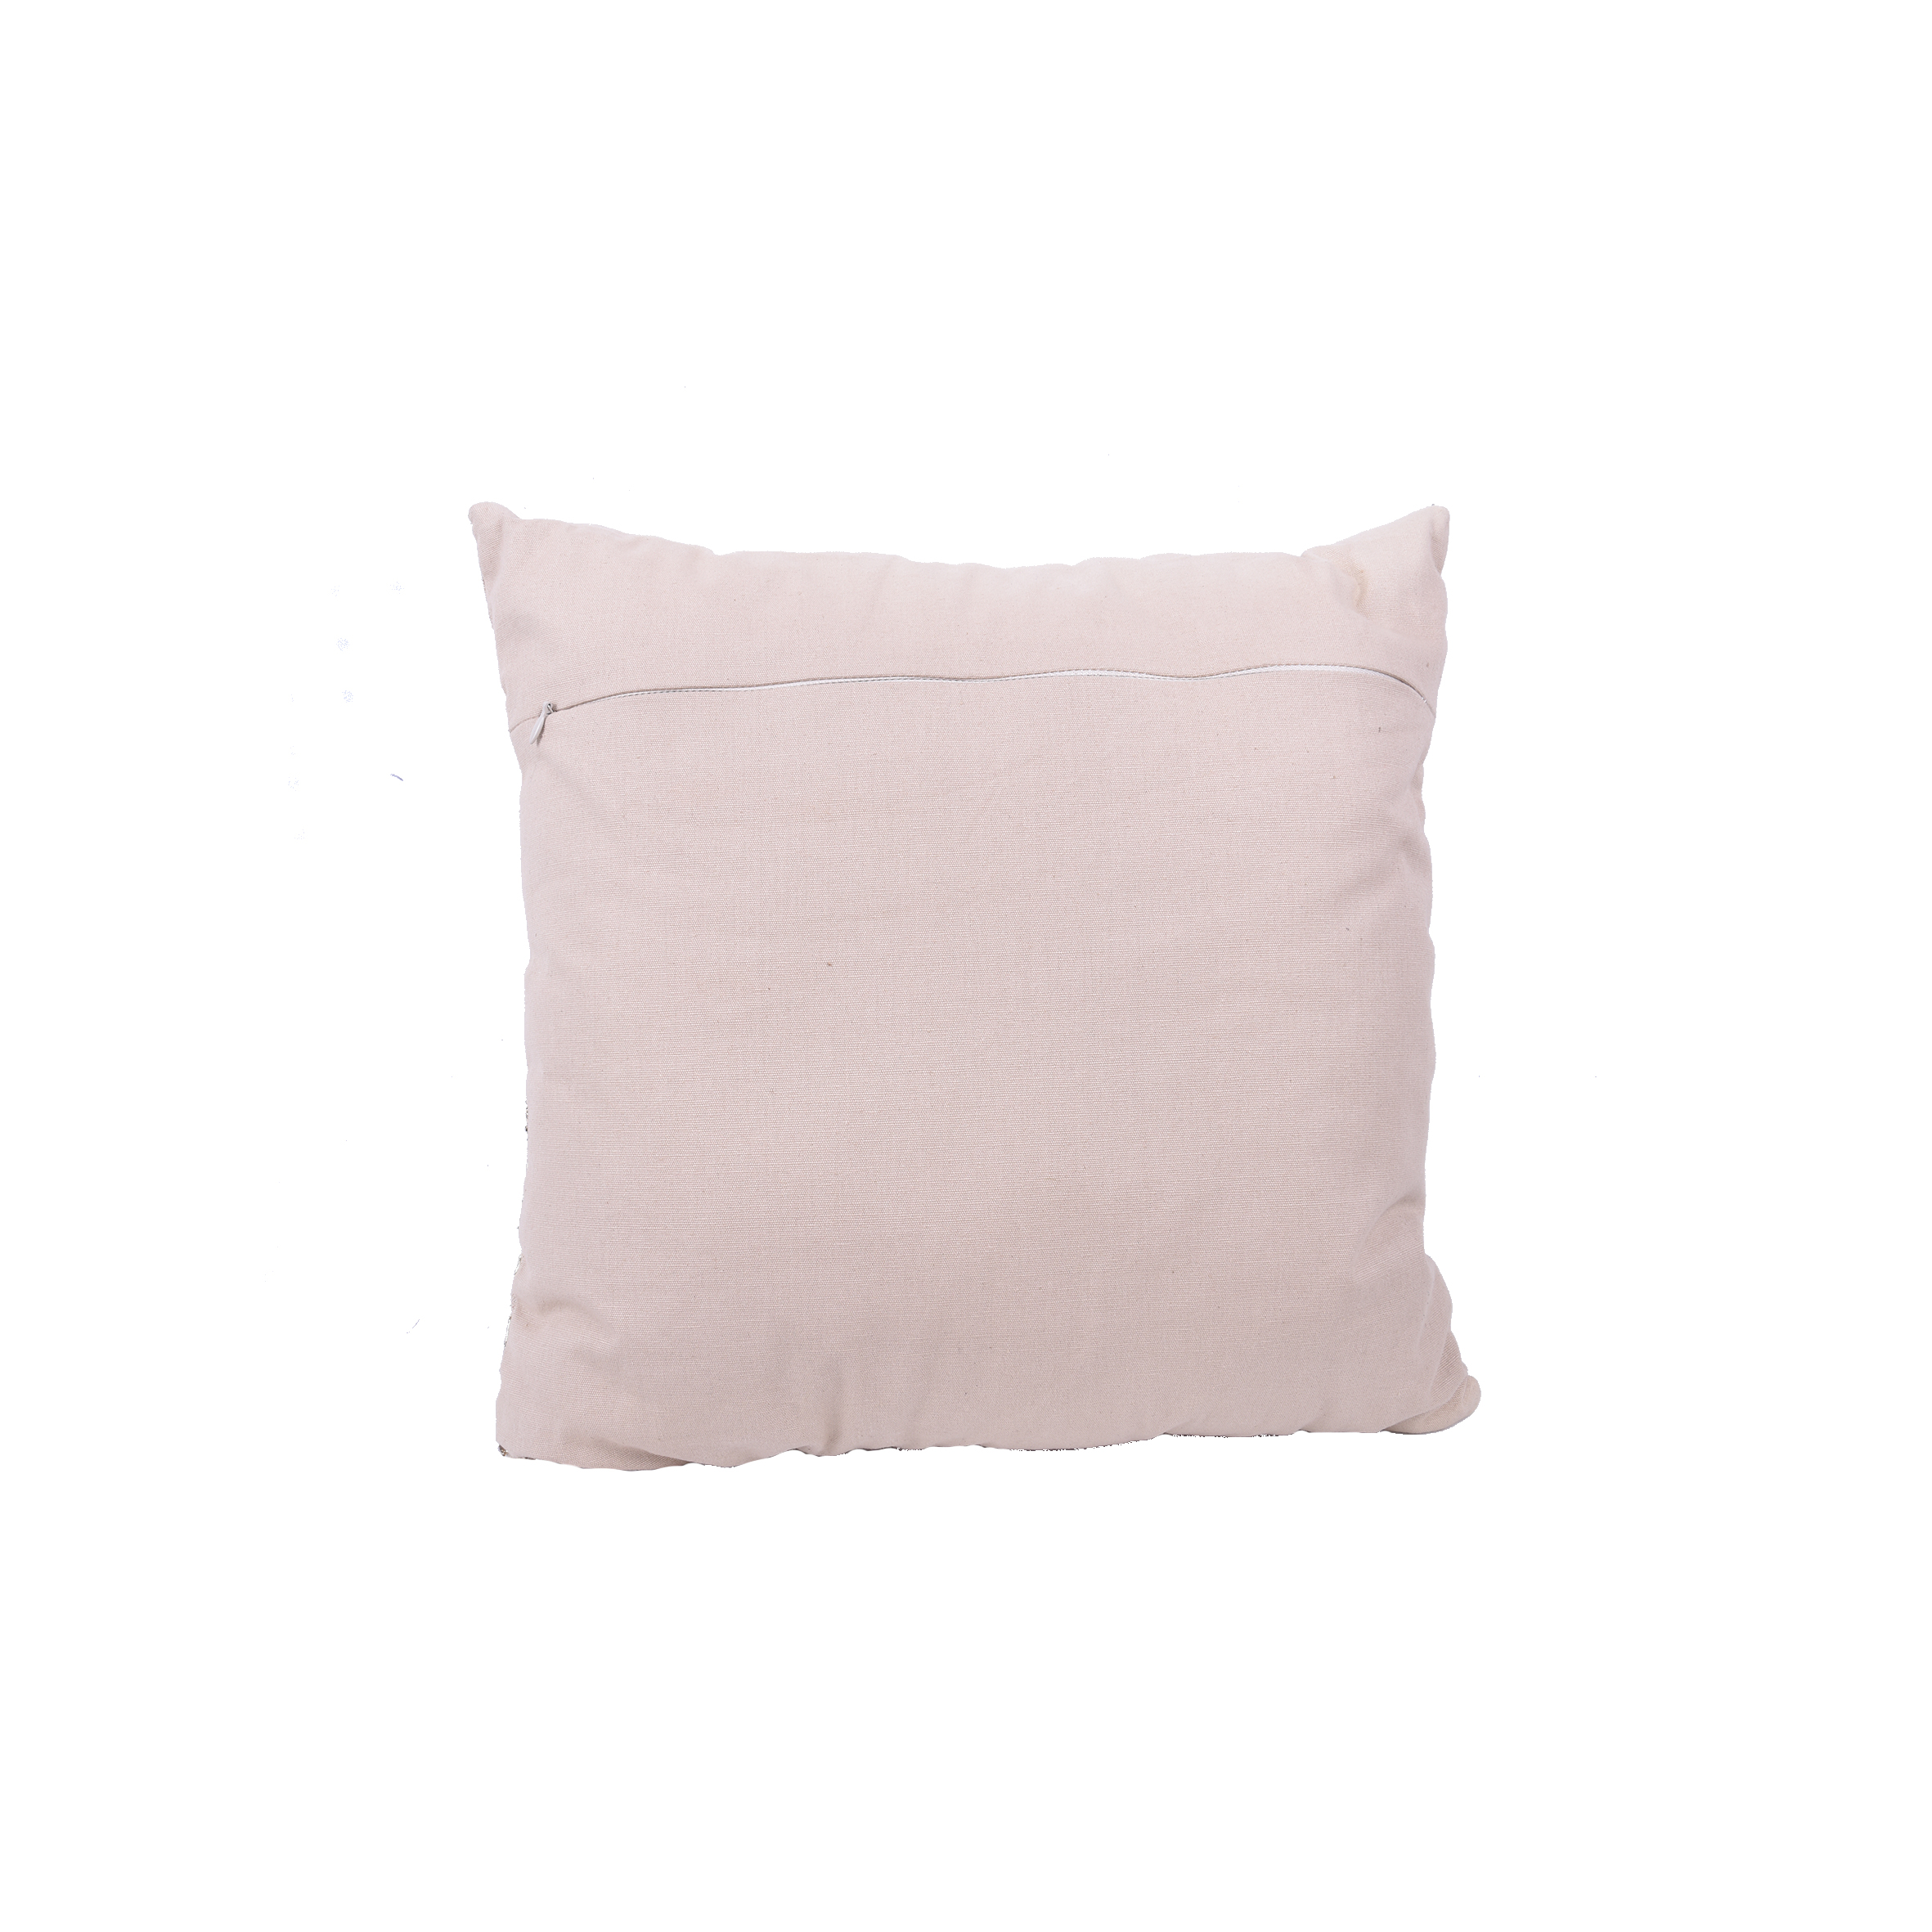 comfort chair cushion pillows home decor